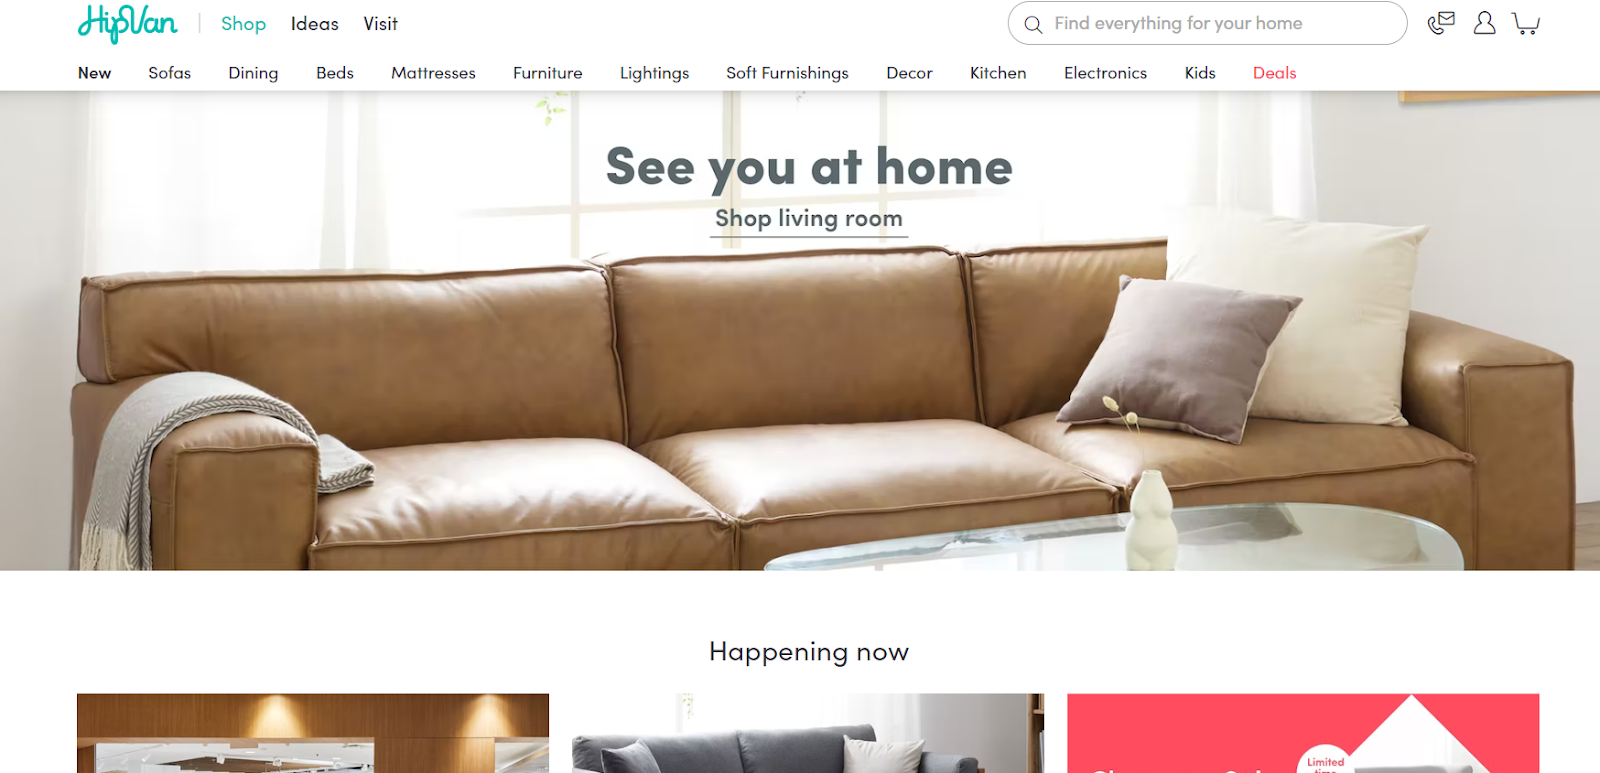 hipvan websites for furniture